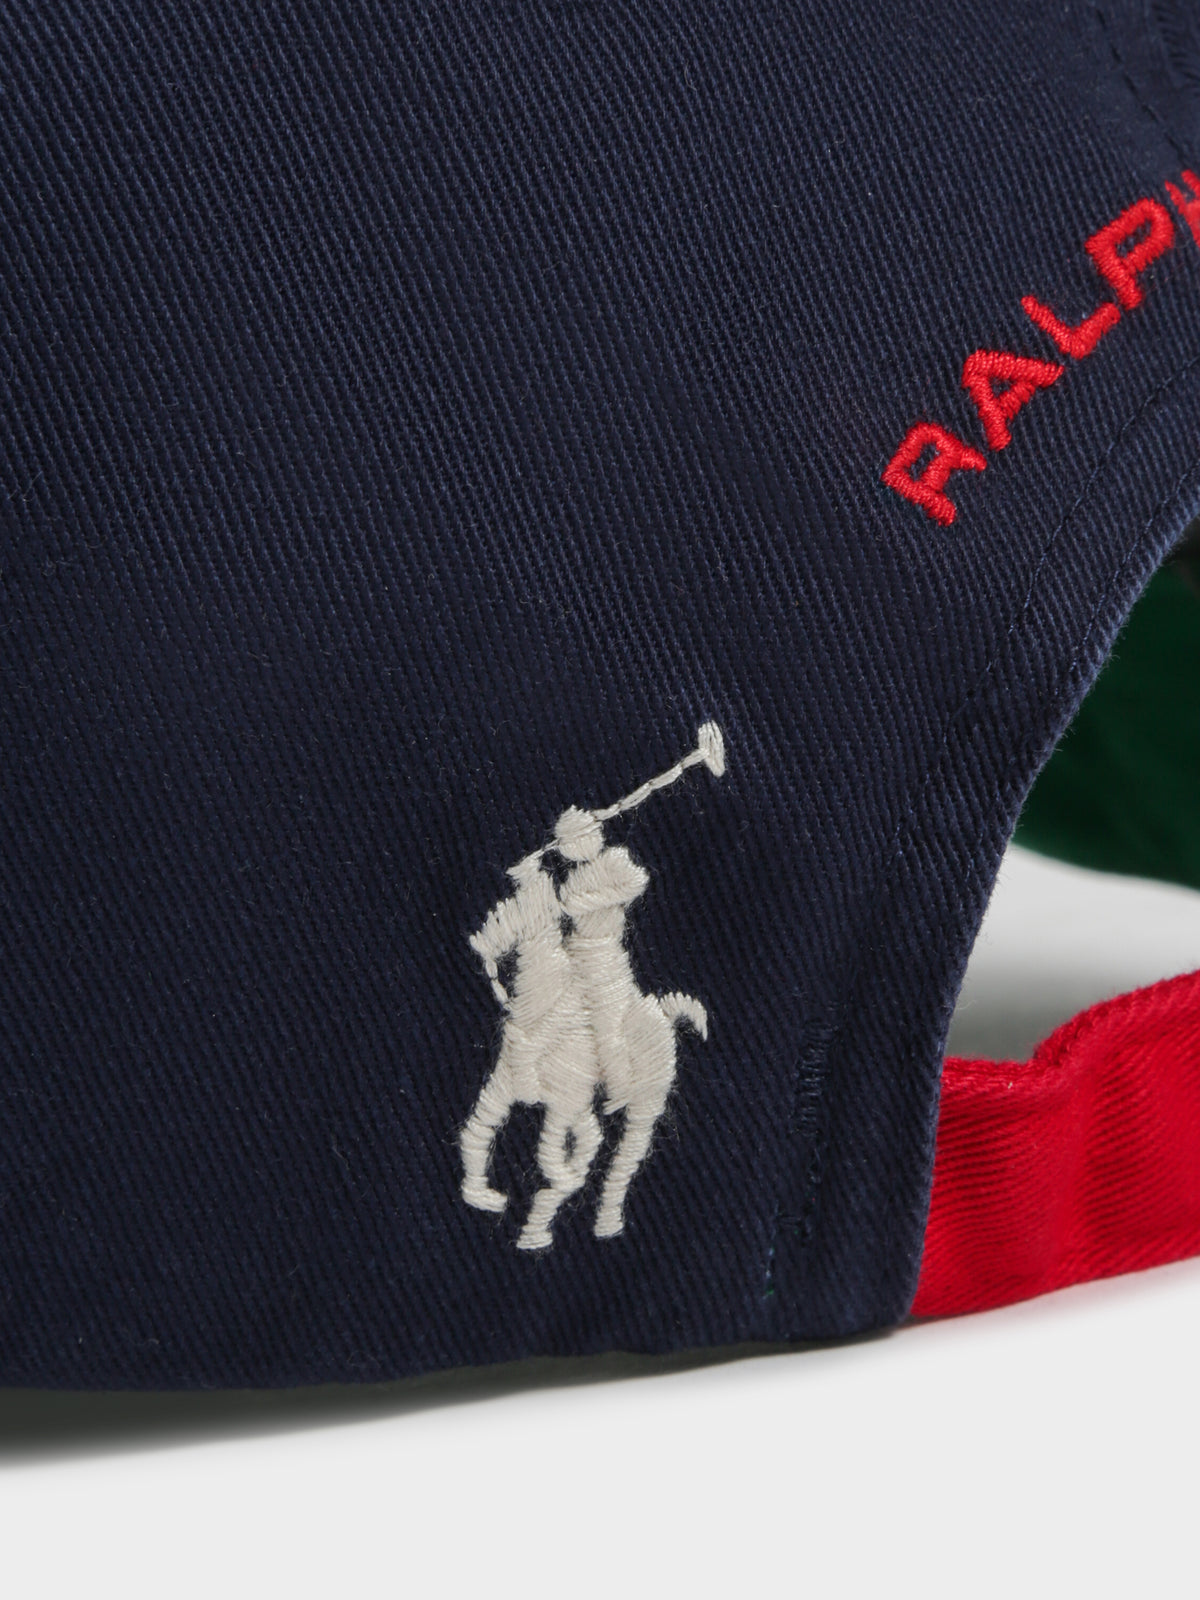 Polo Ralph Lauren Sports Cap in Navy